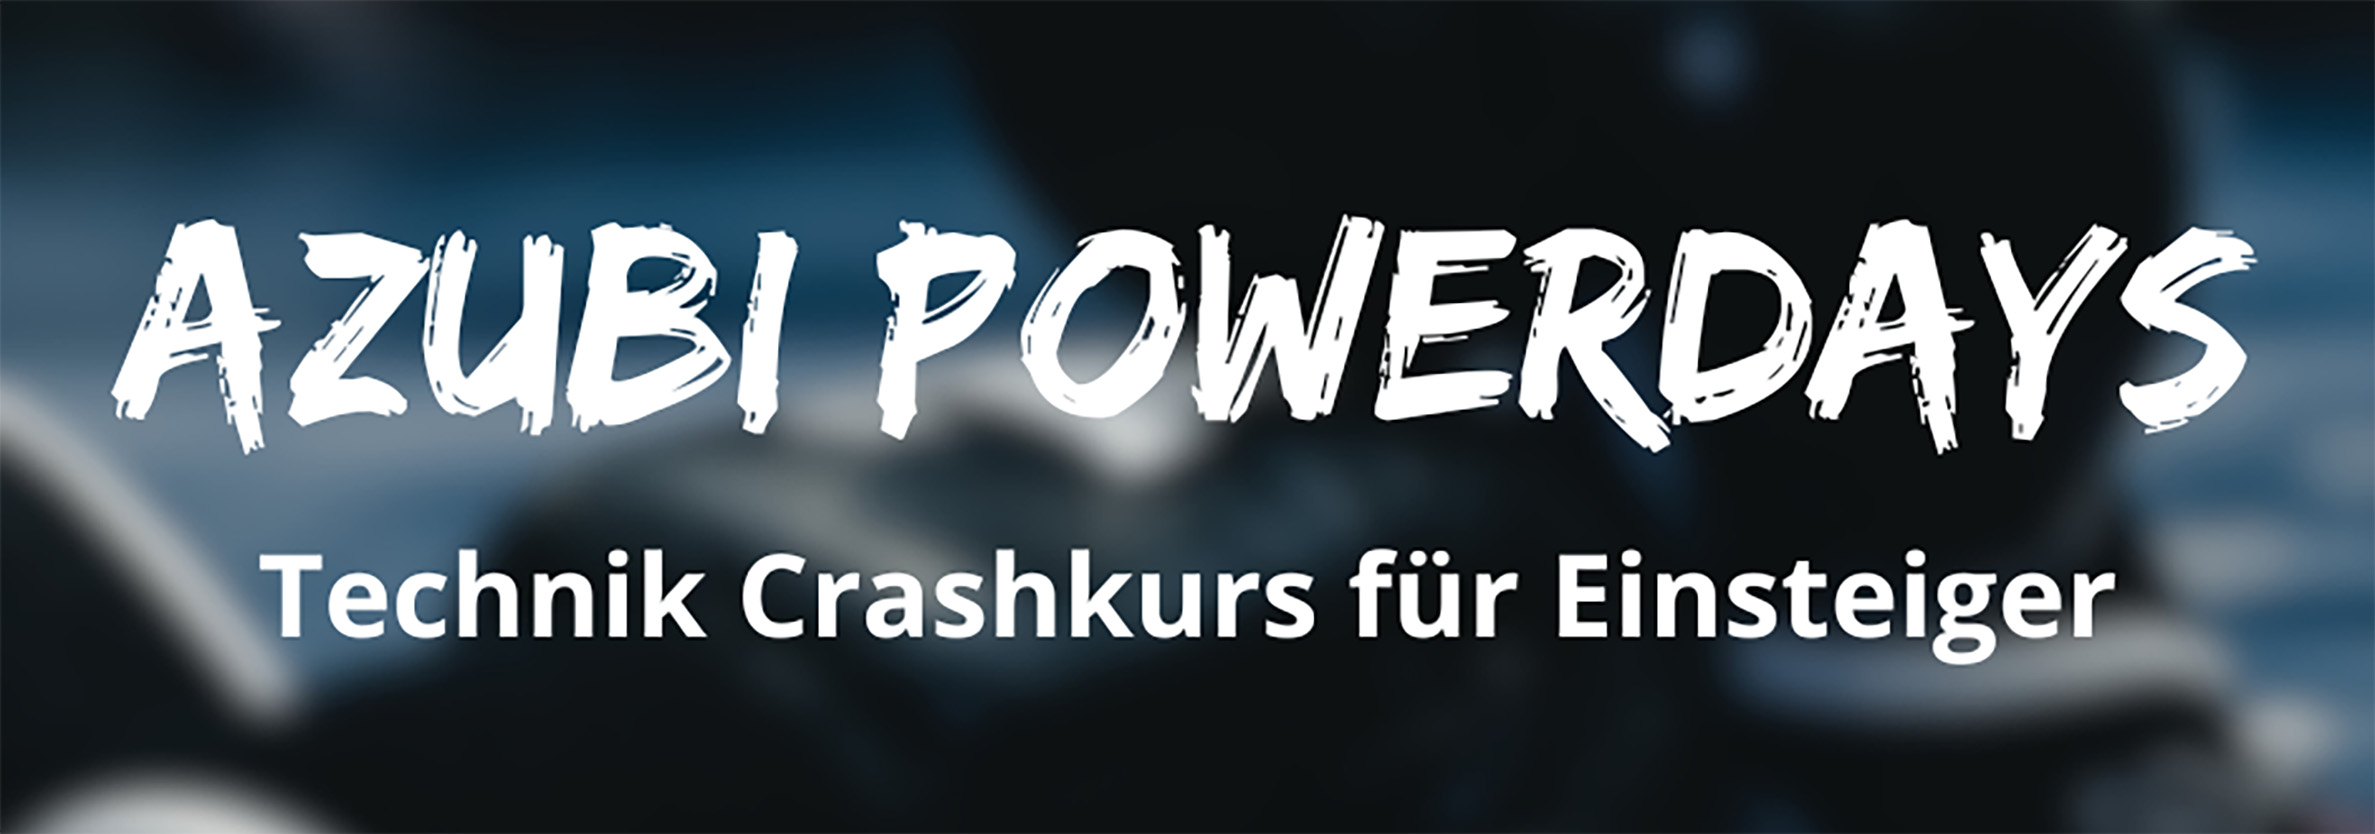 Azubi Powerdays - Technik Crashkurs für Einsteiger